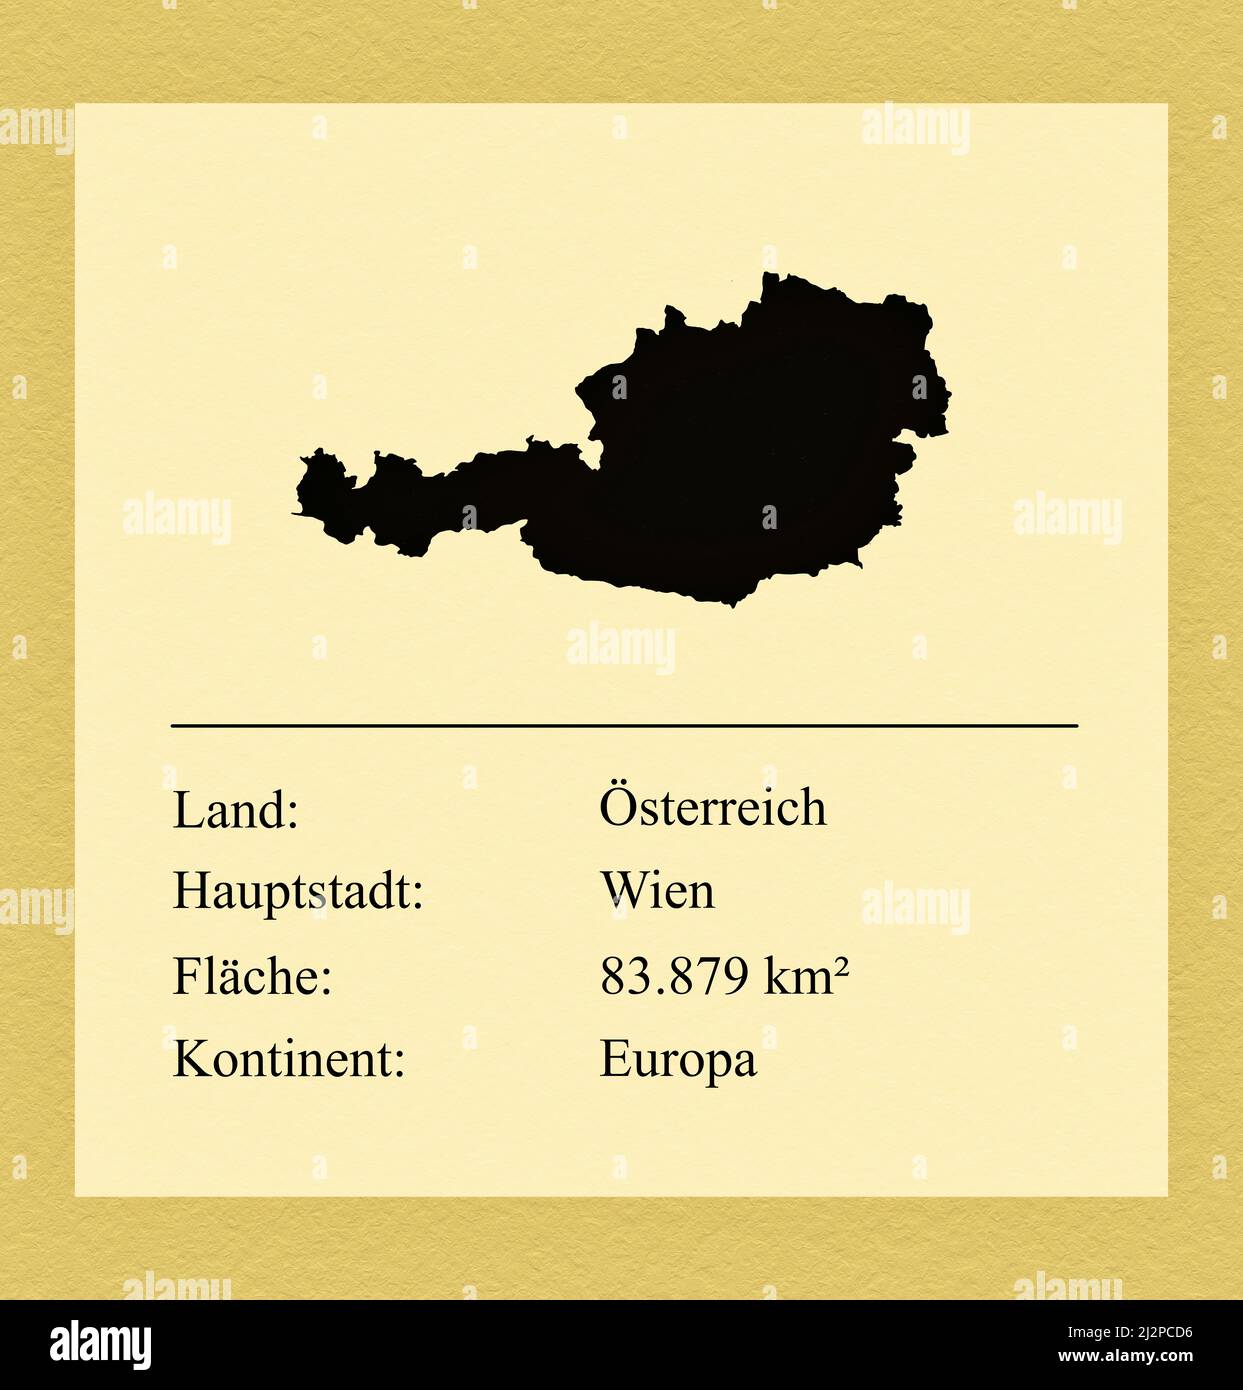 Umrisse des Landes Österreich, darunter ein kleiner Steckbrief mit Ländernamen, Hauptstadt, Fläche und Kontinent Foto de stock